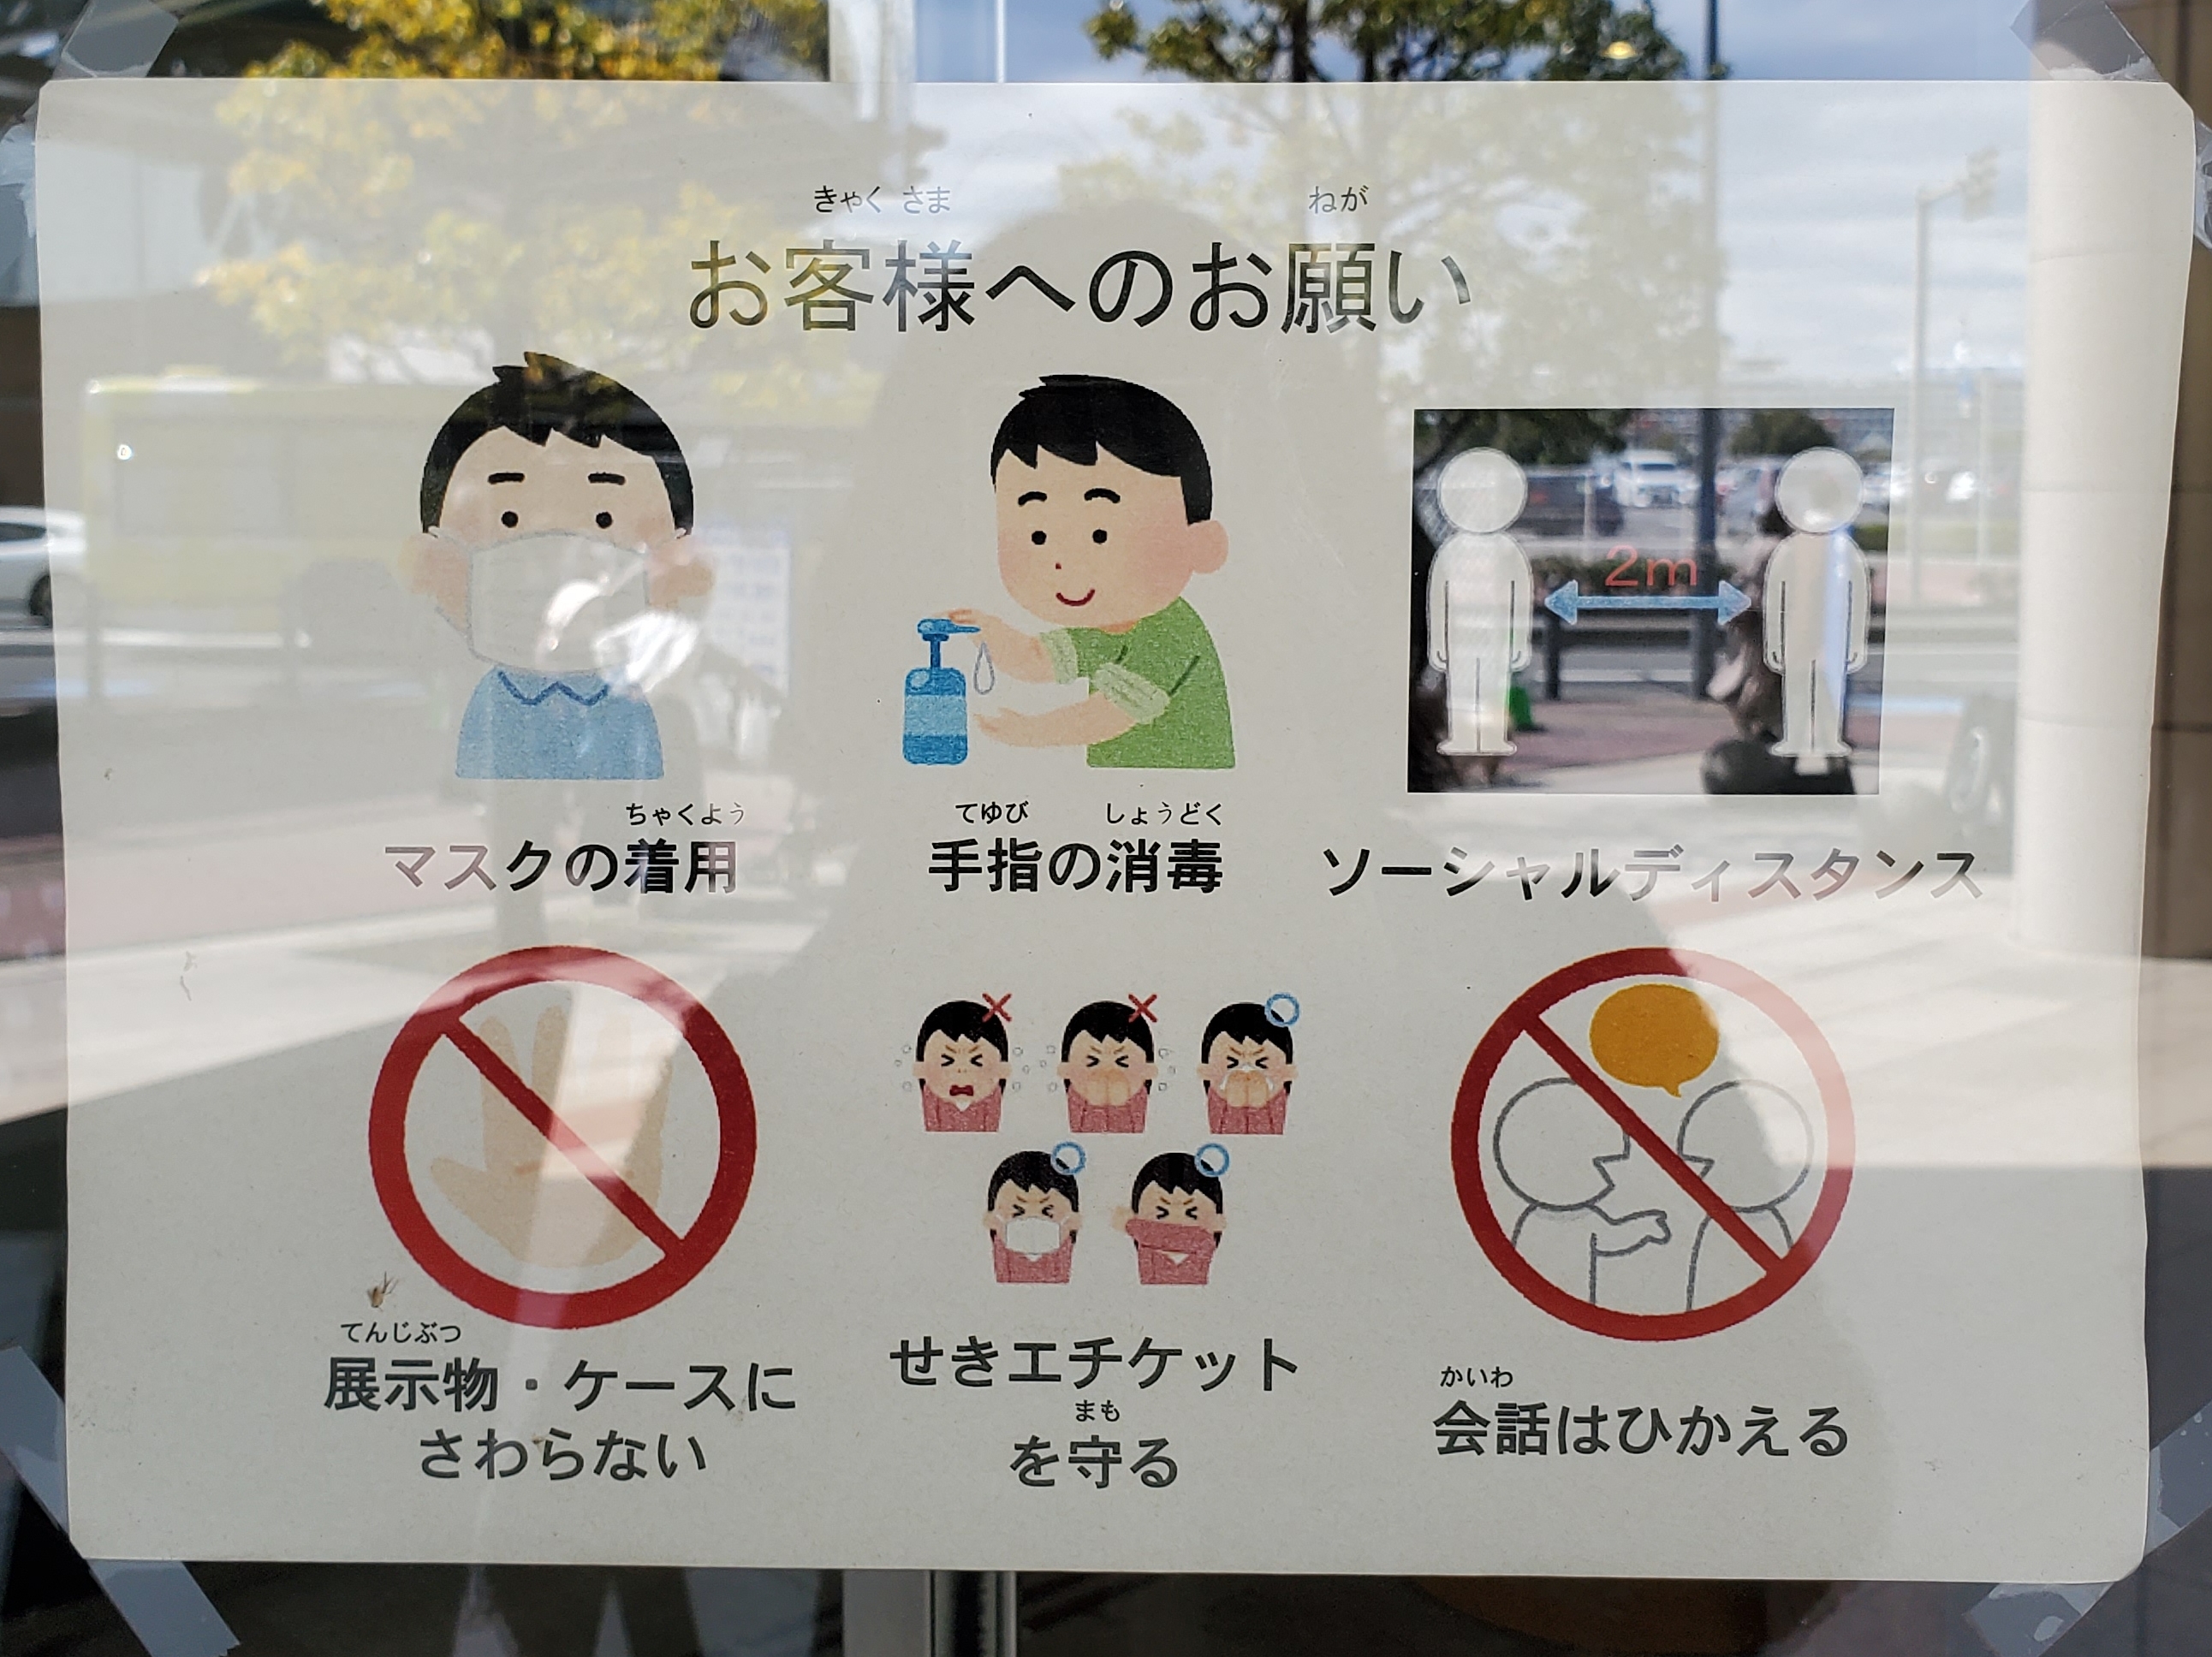 三浦靖雄 登録1019号はjica横浜の お客様へのお願い マスク着用 手指消毒 展示物へのタッチ禁止などコロナ関連が多いです 使用は禁止マークシリーズから 手触れ禁止のマーク など 辻さんからの画像提供 いらすとや いらすとやマッピング